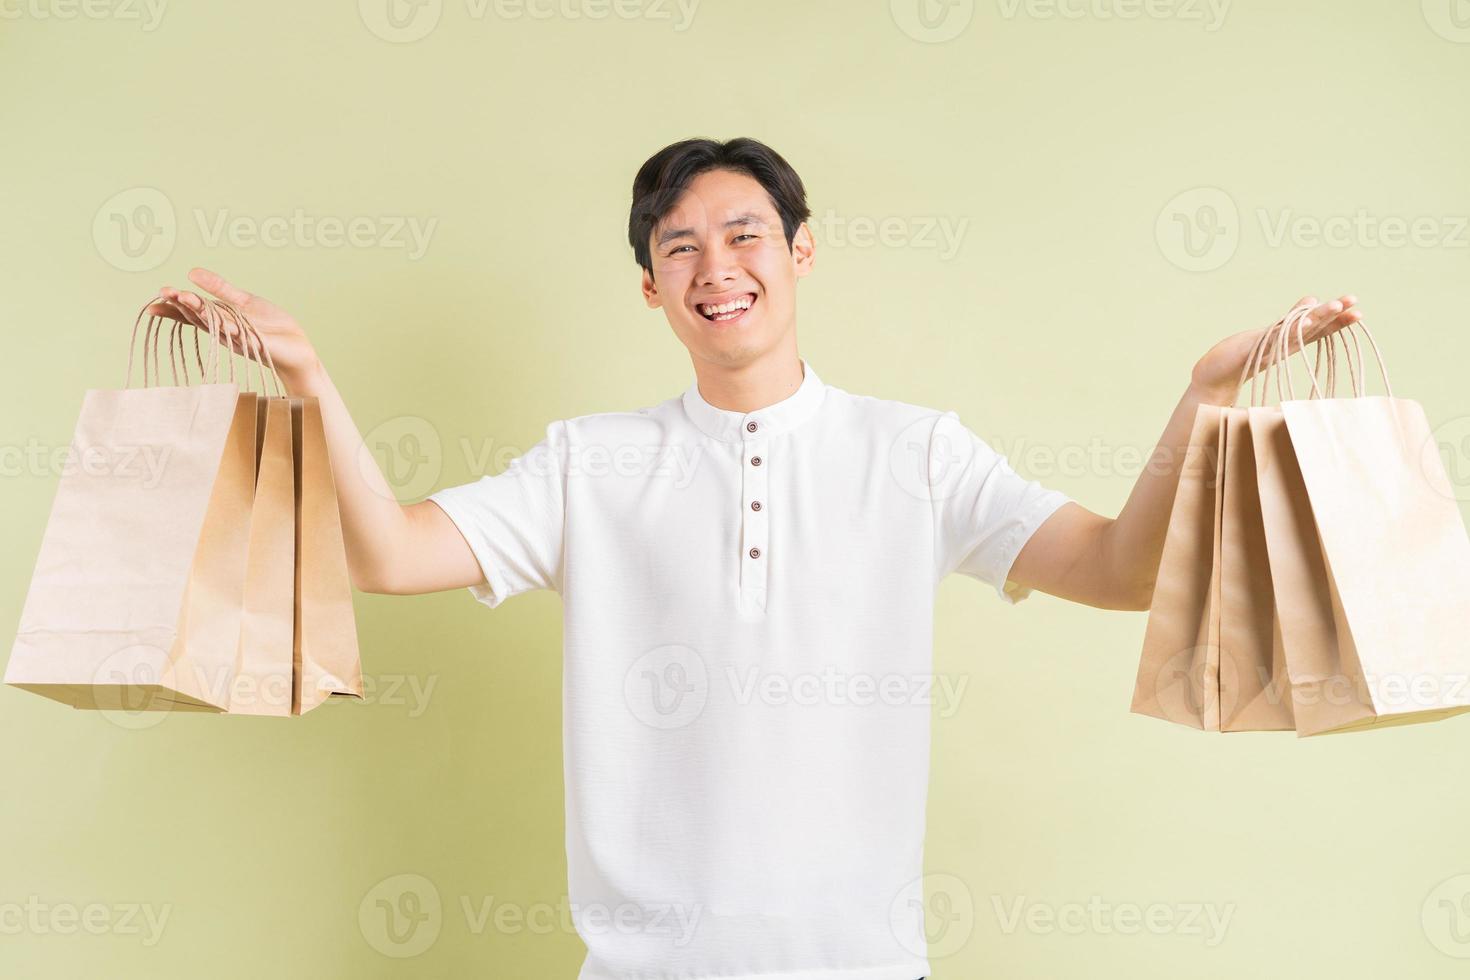 il bell'uomo asiatico tiene in mano dei sacchetti di carta foto